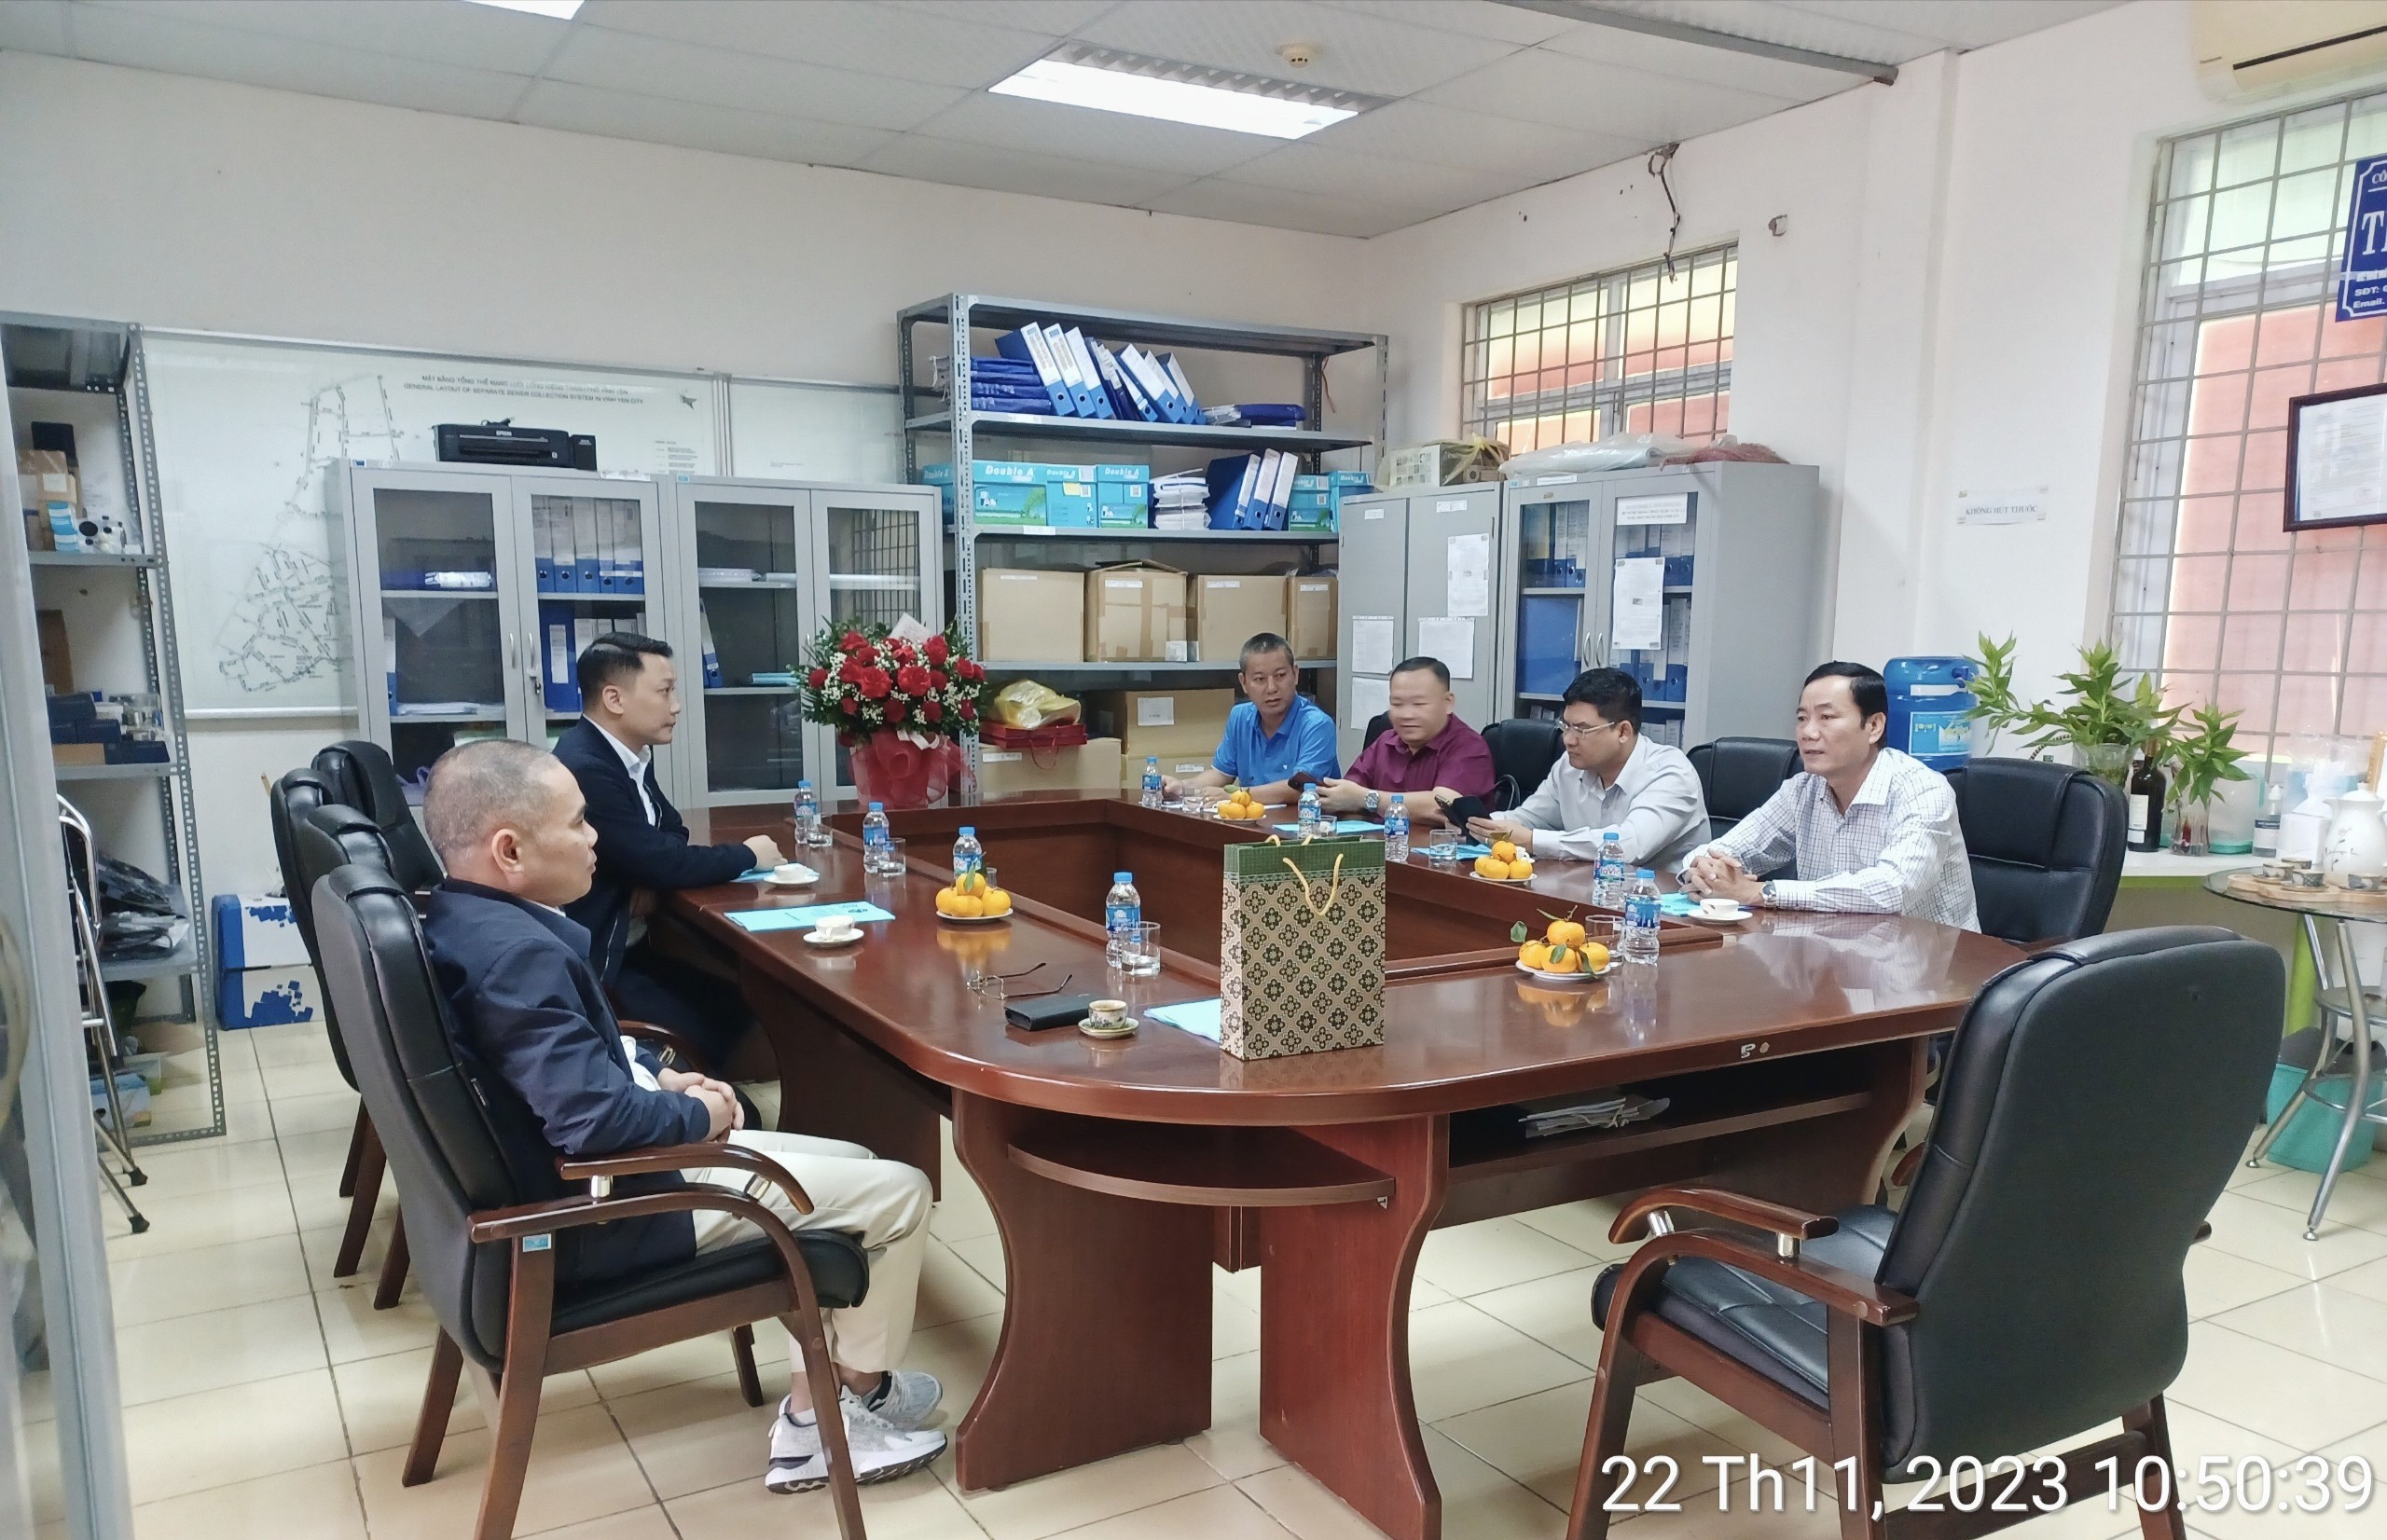 Đoàn lãnh đạo thành phố Phan Rang - Ninh Thuận đến thăm và làm việc tại nhà máy xử lý nước thải thành phố Vĩnh Yên sáng ngày 22/11/2023